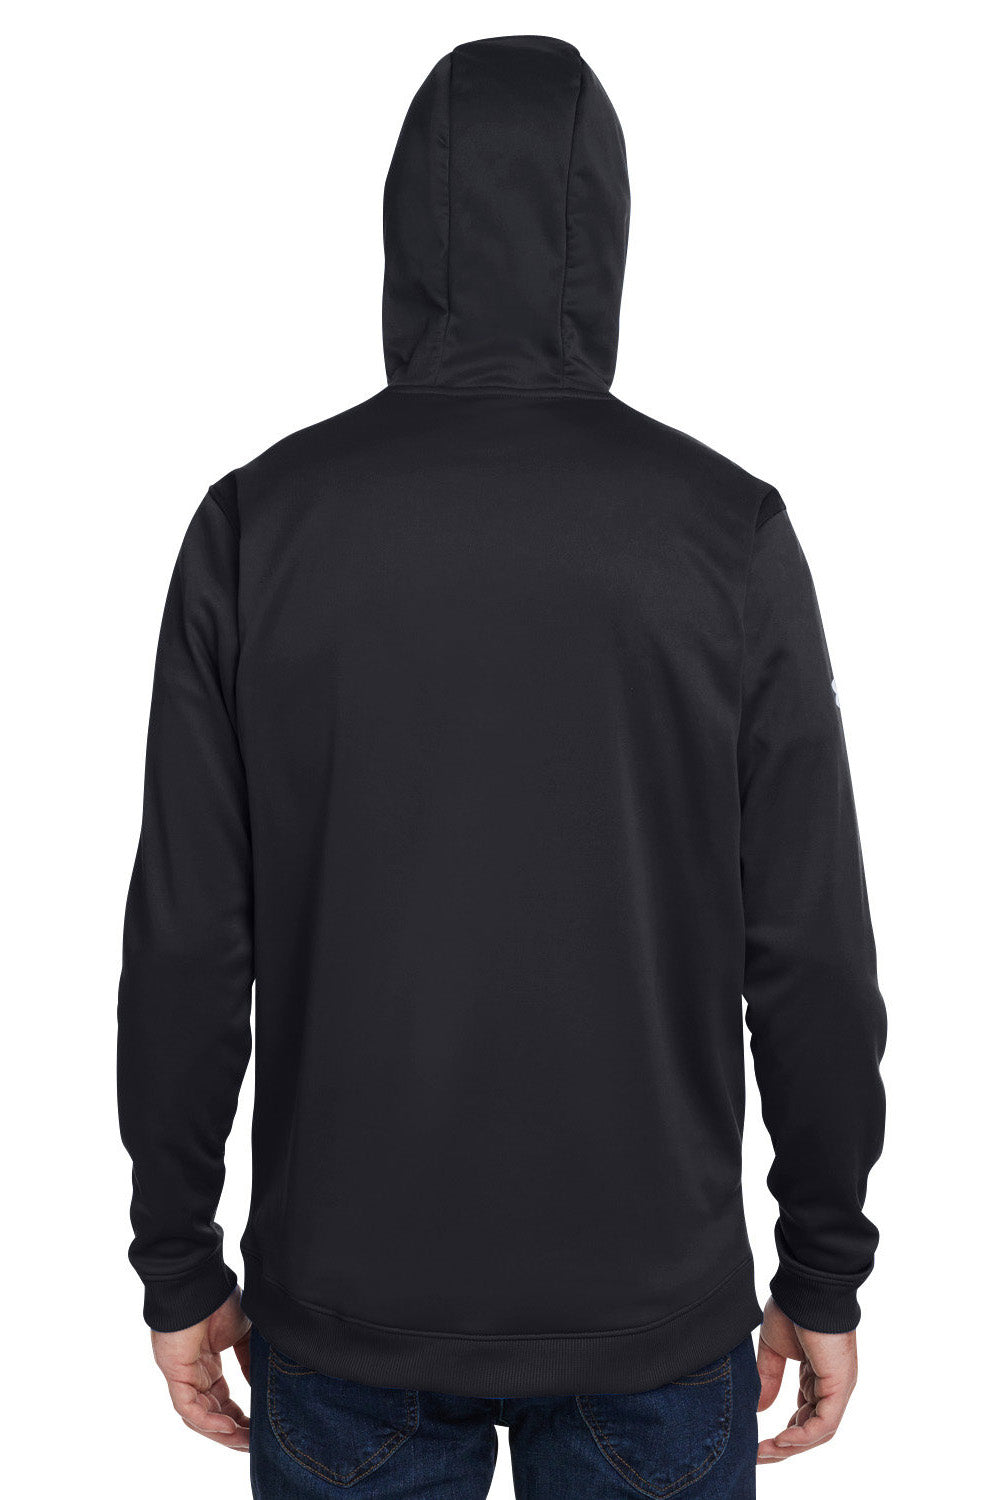 Under Armour 1370379 Mens Storm Armourfleece Water Resistant Hooded Sweatshirt Hoodie Black Model Back